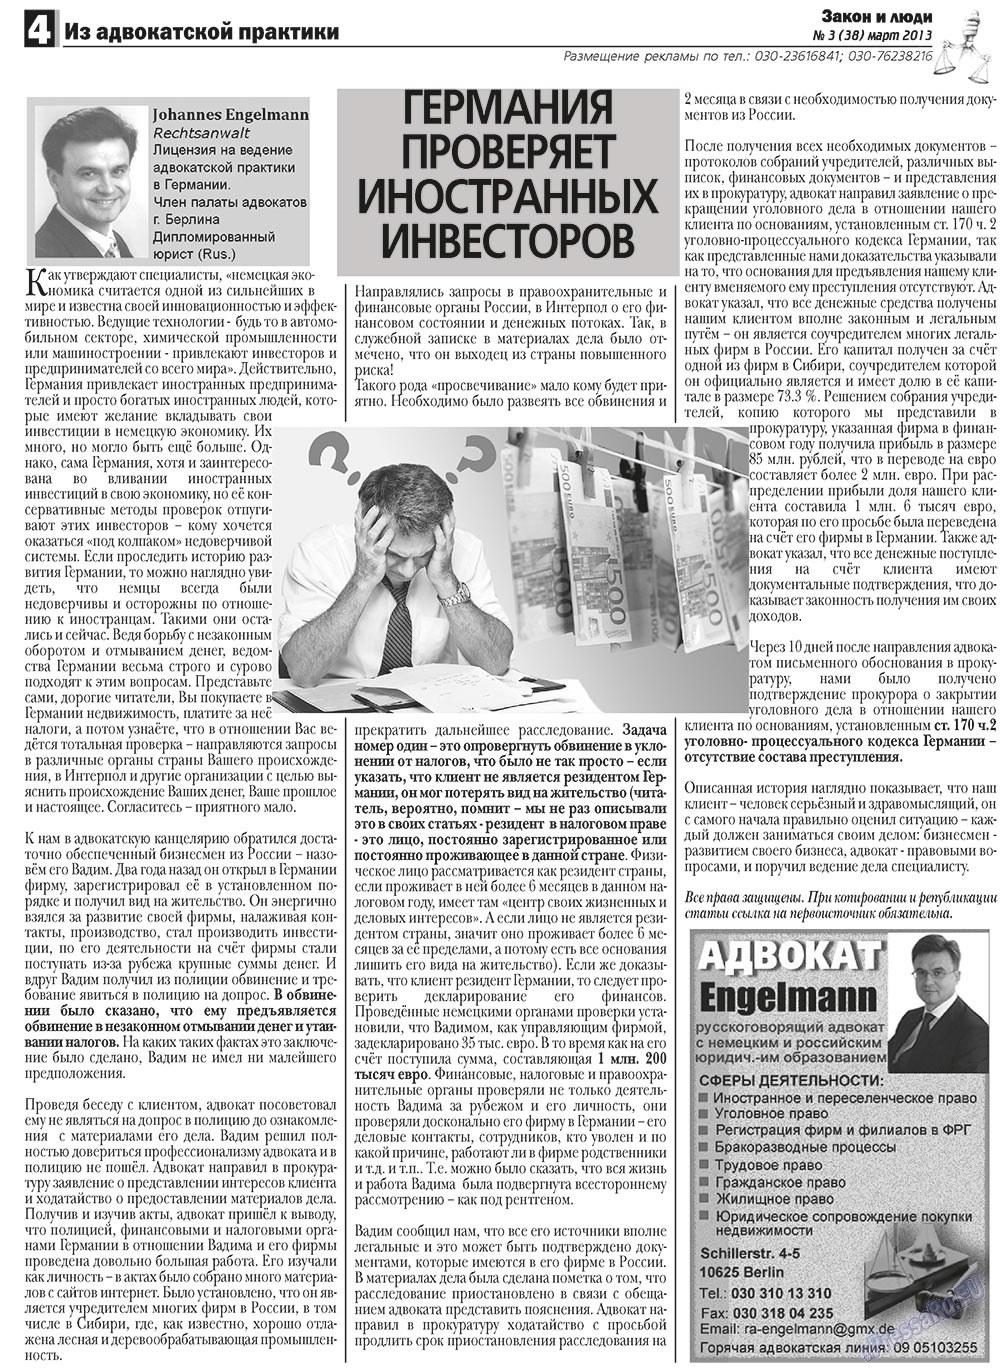 Закон и люди, газета. 2013 №3 стр.4